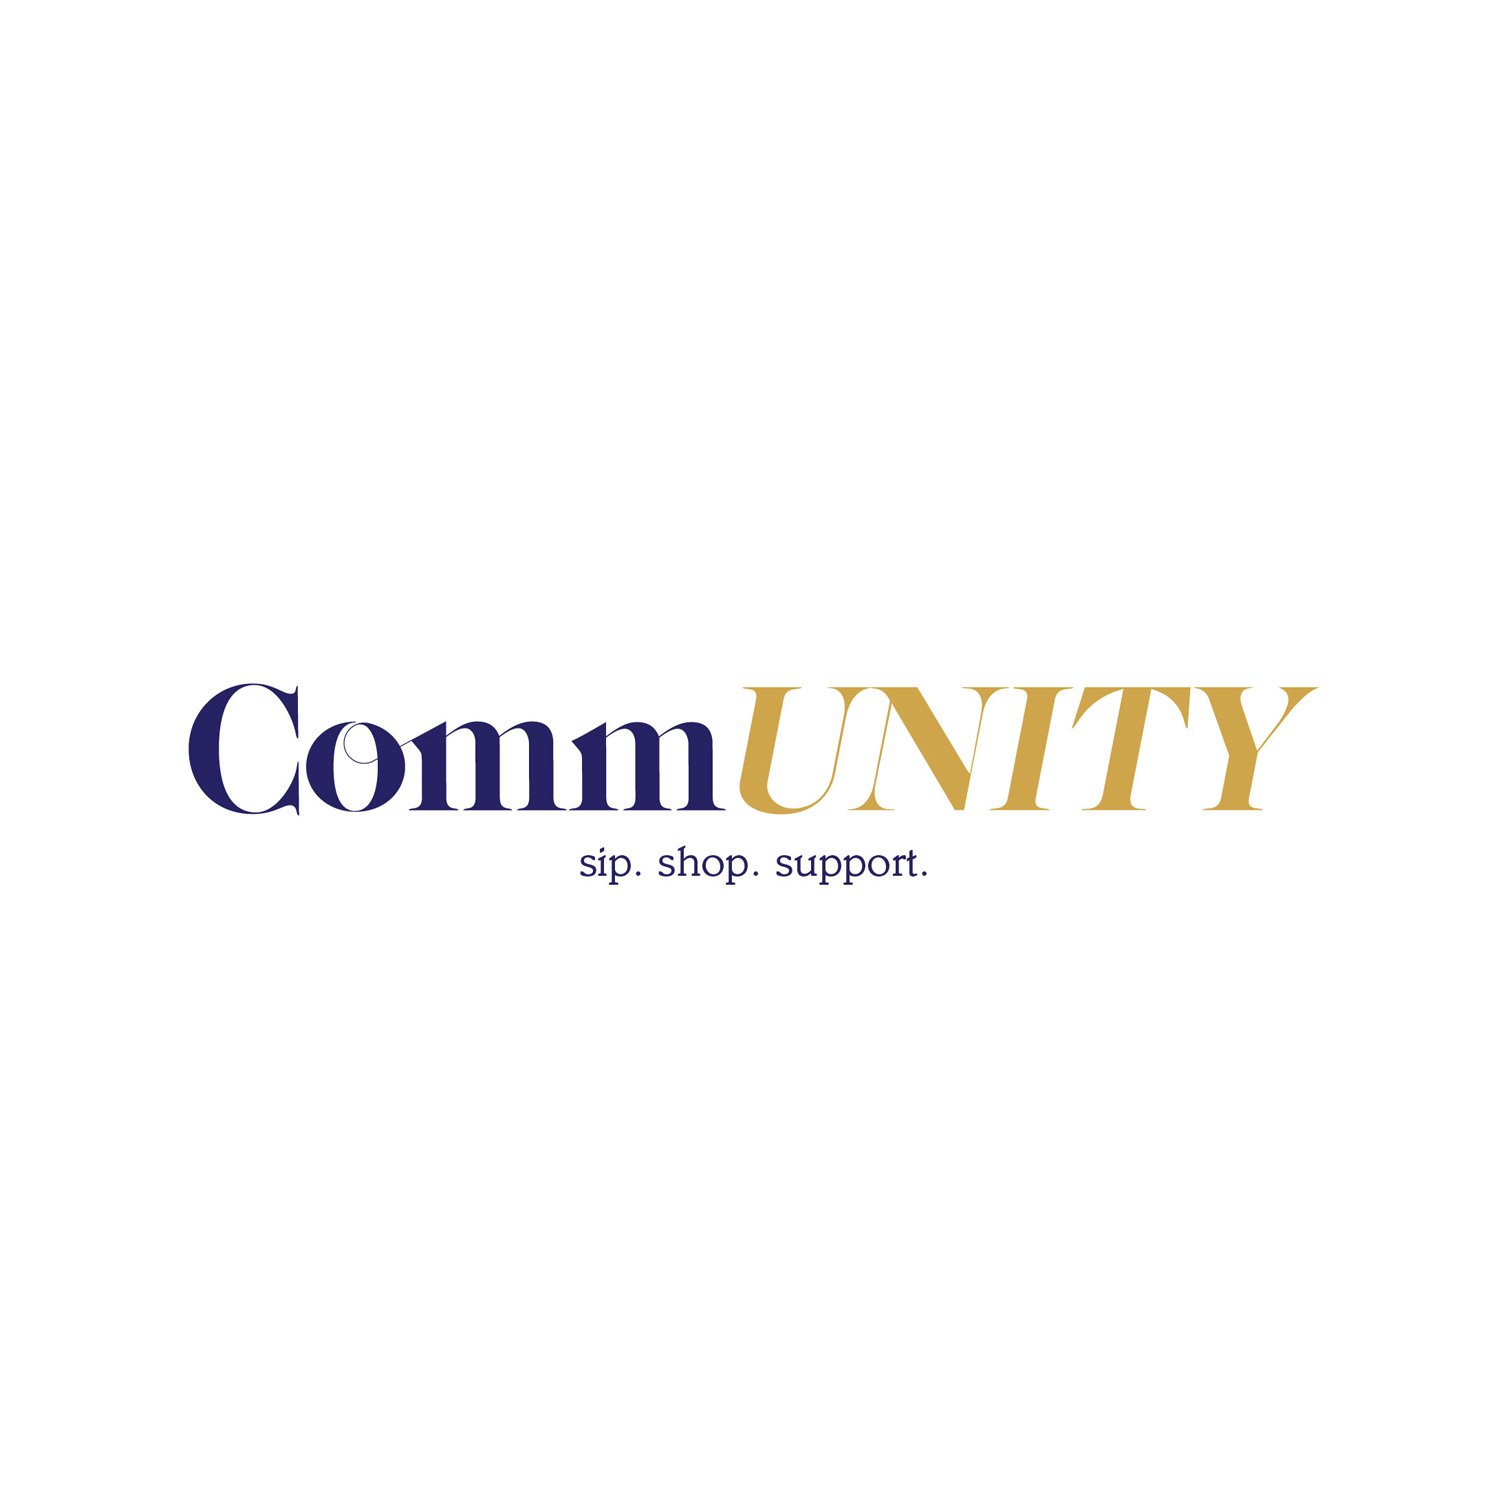 Community - logo.jpg